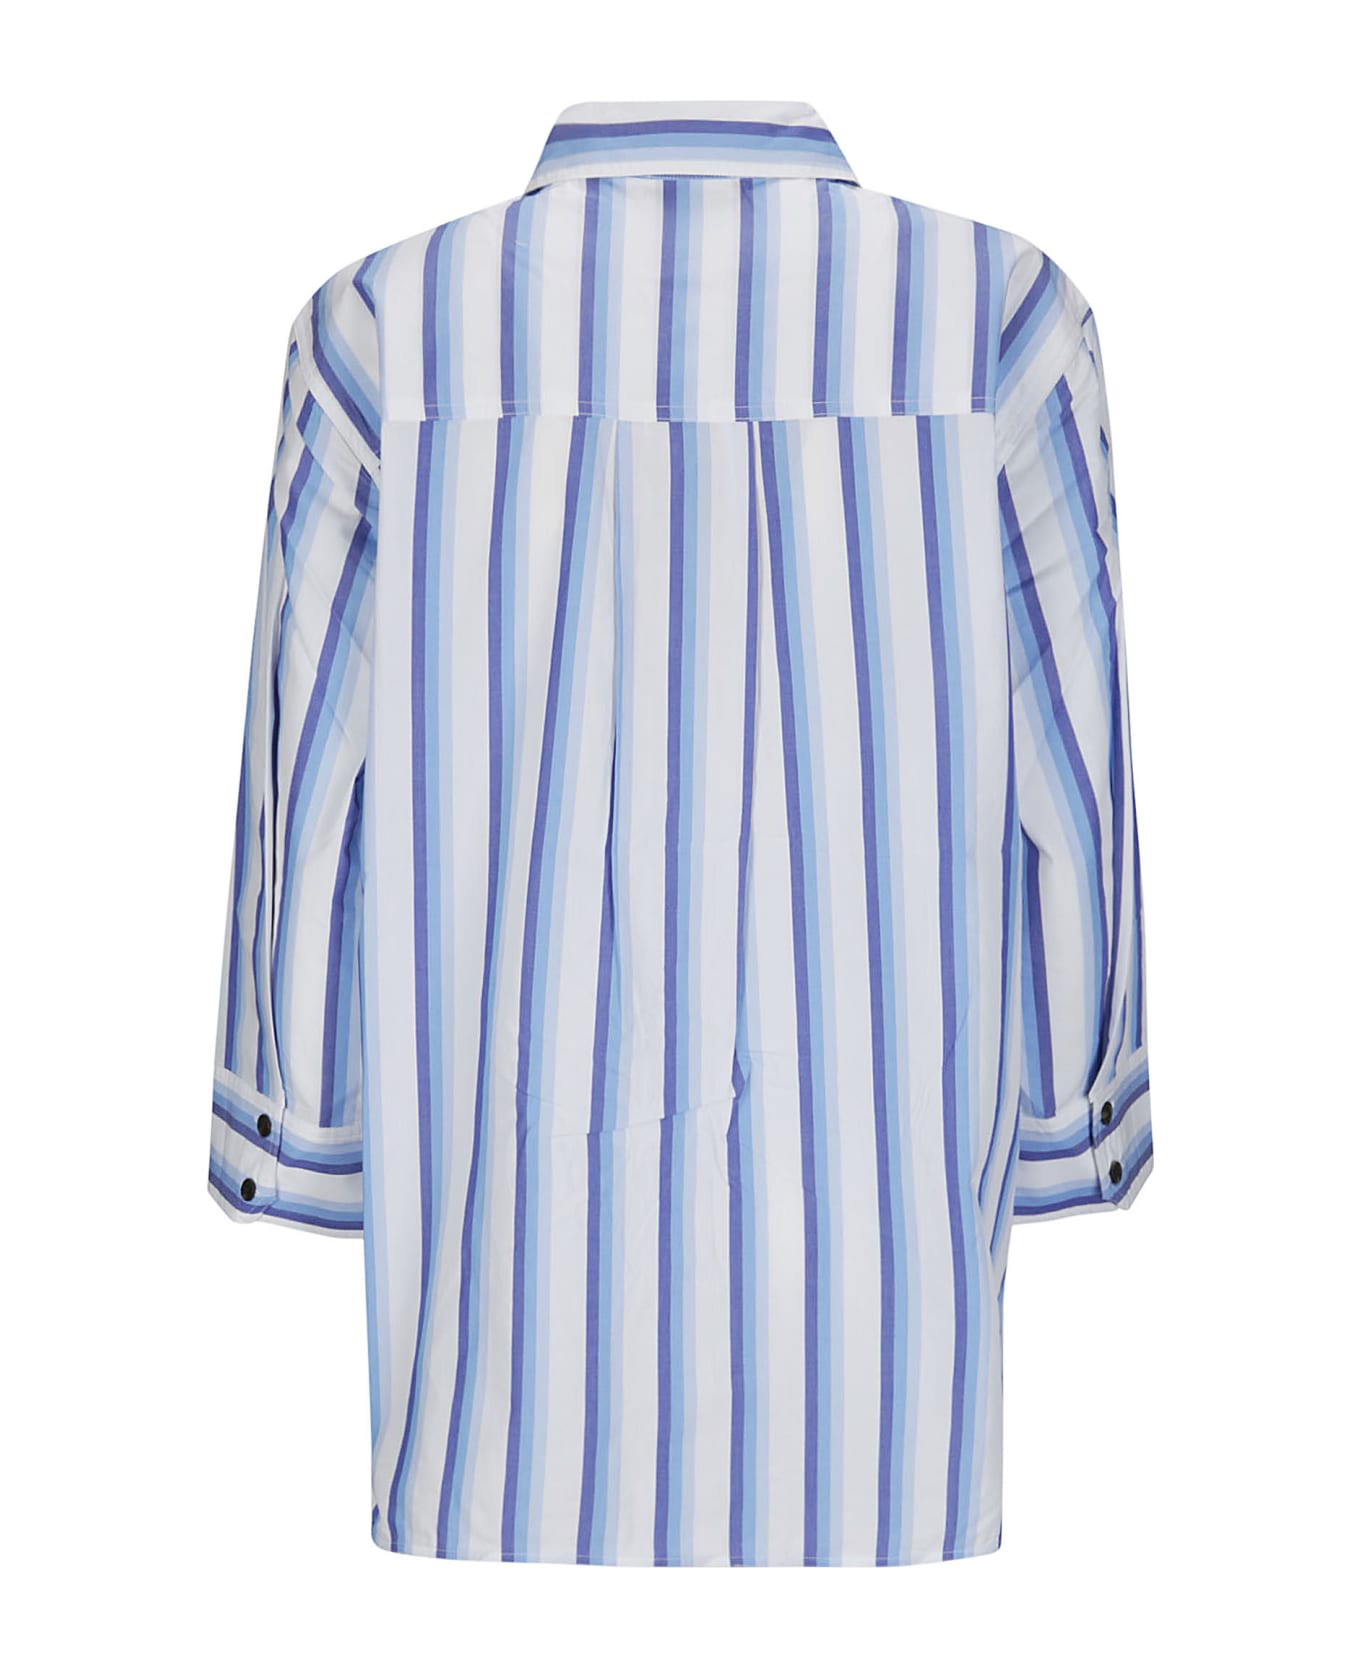 Ganni Stripe Cotton Shirt - SILVER LAKE BLUE シャツ